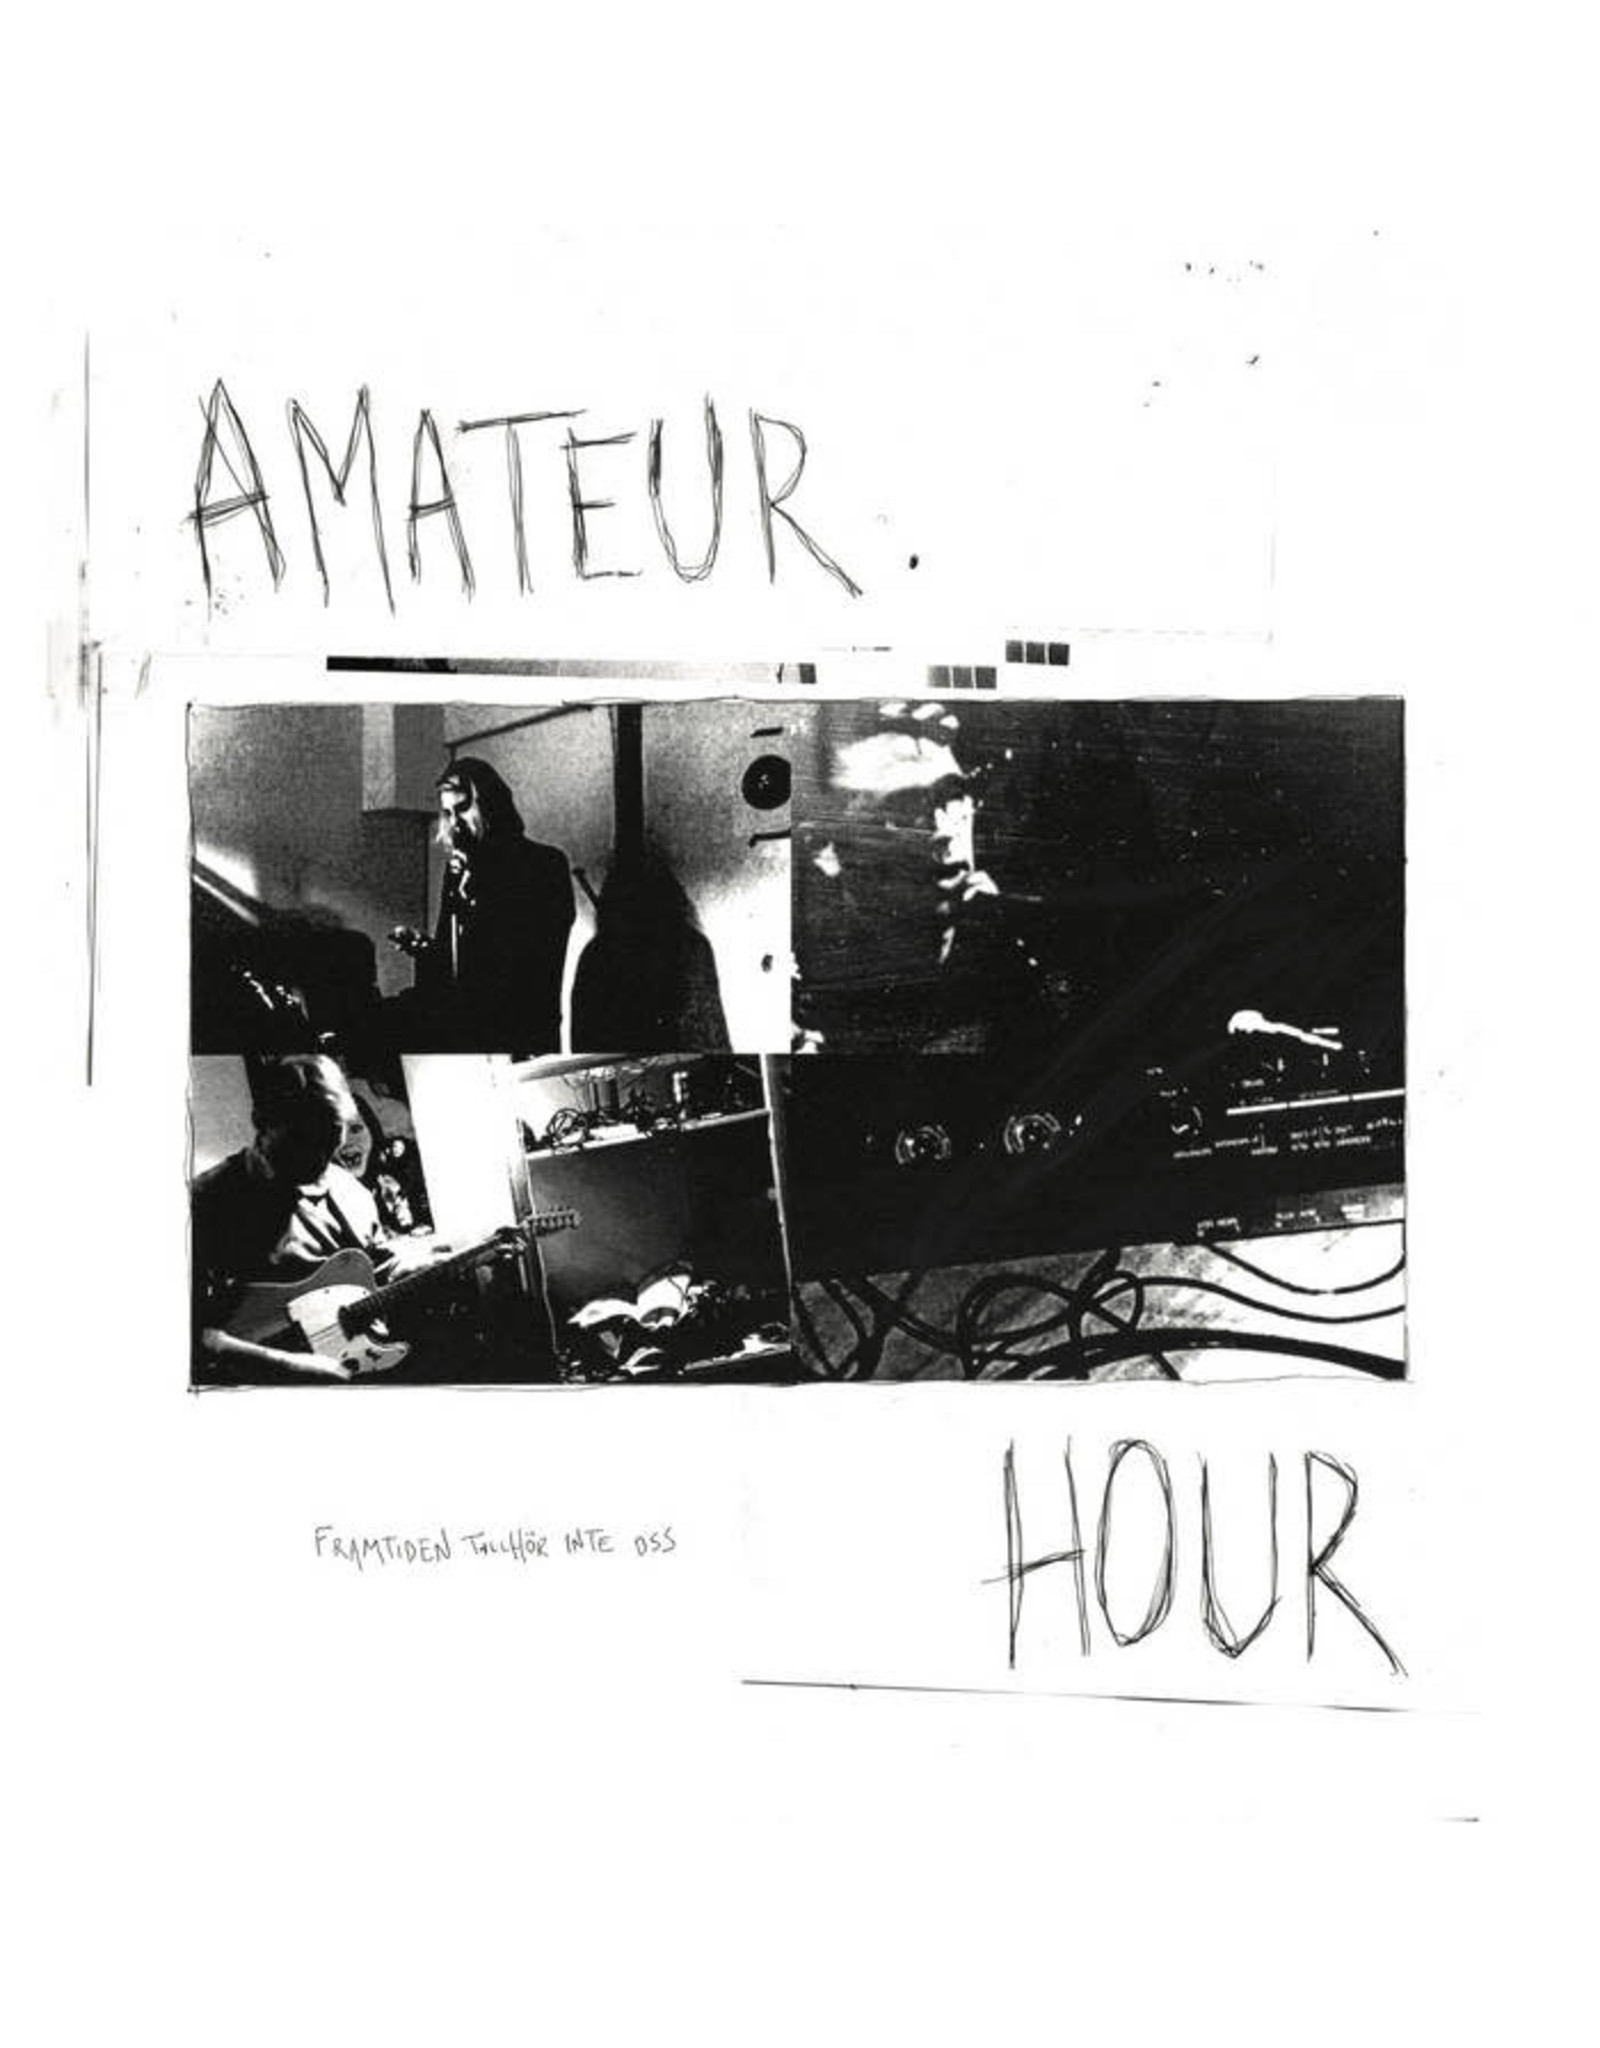 Amateur Hour: Framtiden Tillhor Inte Oss LP